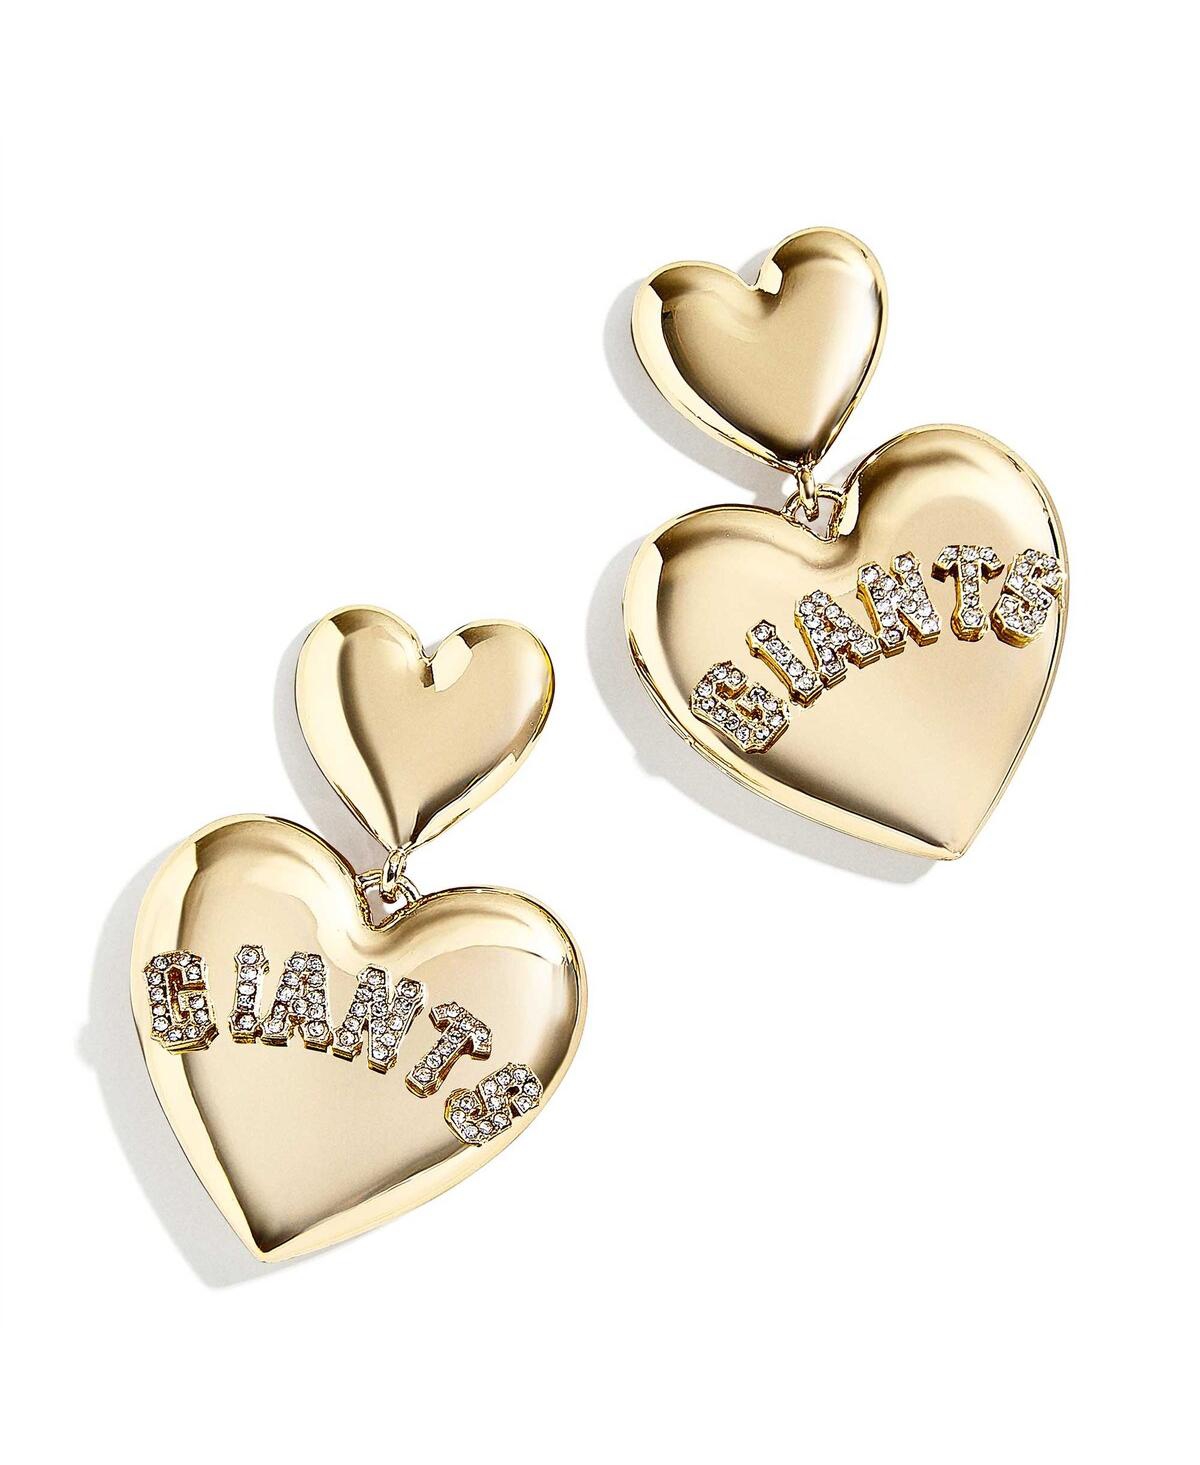 Wear By Erin Andrews X Baublebar San Francisco Giants Heart Statement Drop Earrings In Gold-tone